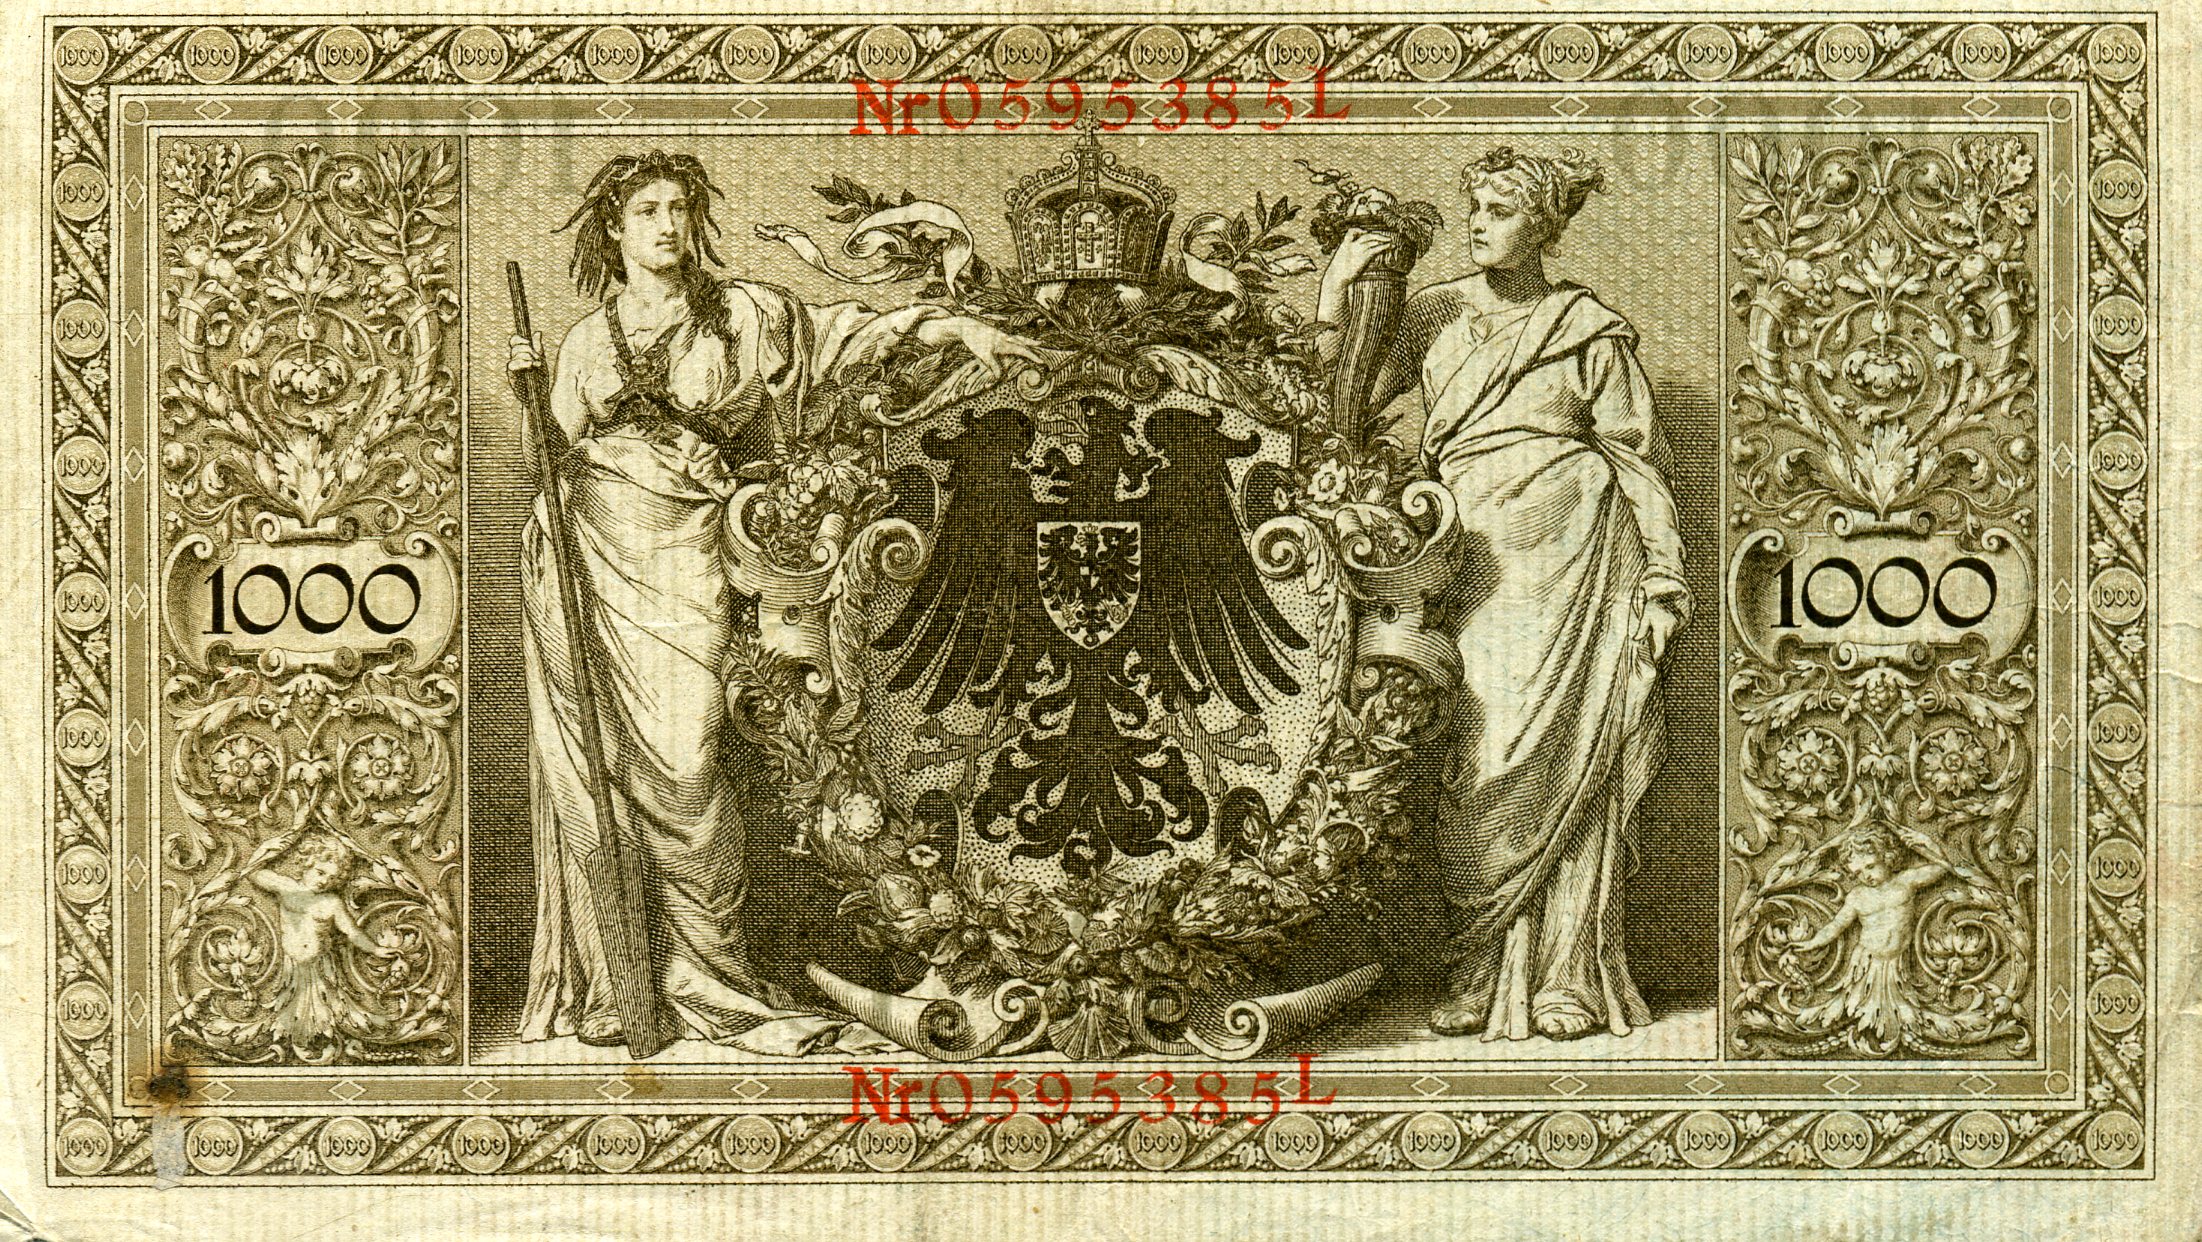 1000 марок 21 апреля 1910 года. Красная печать. Реверс. Реферат Рефератович.